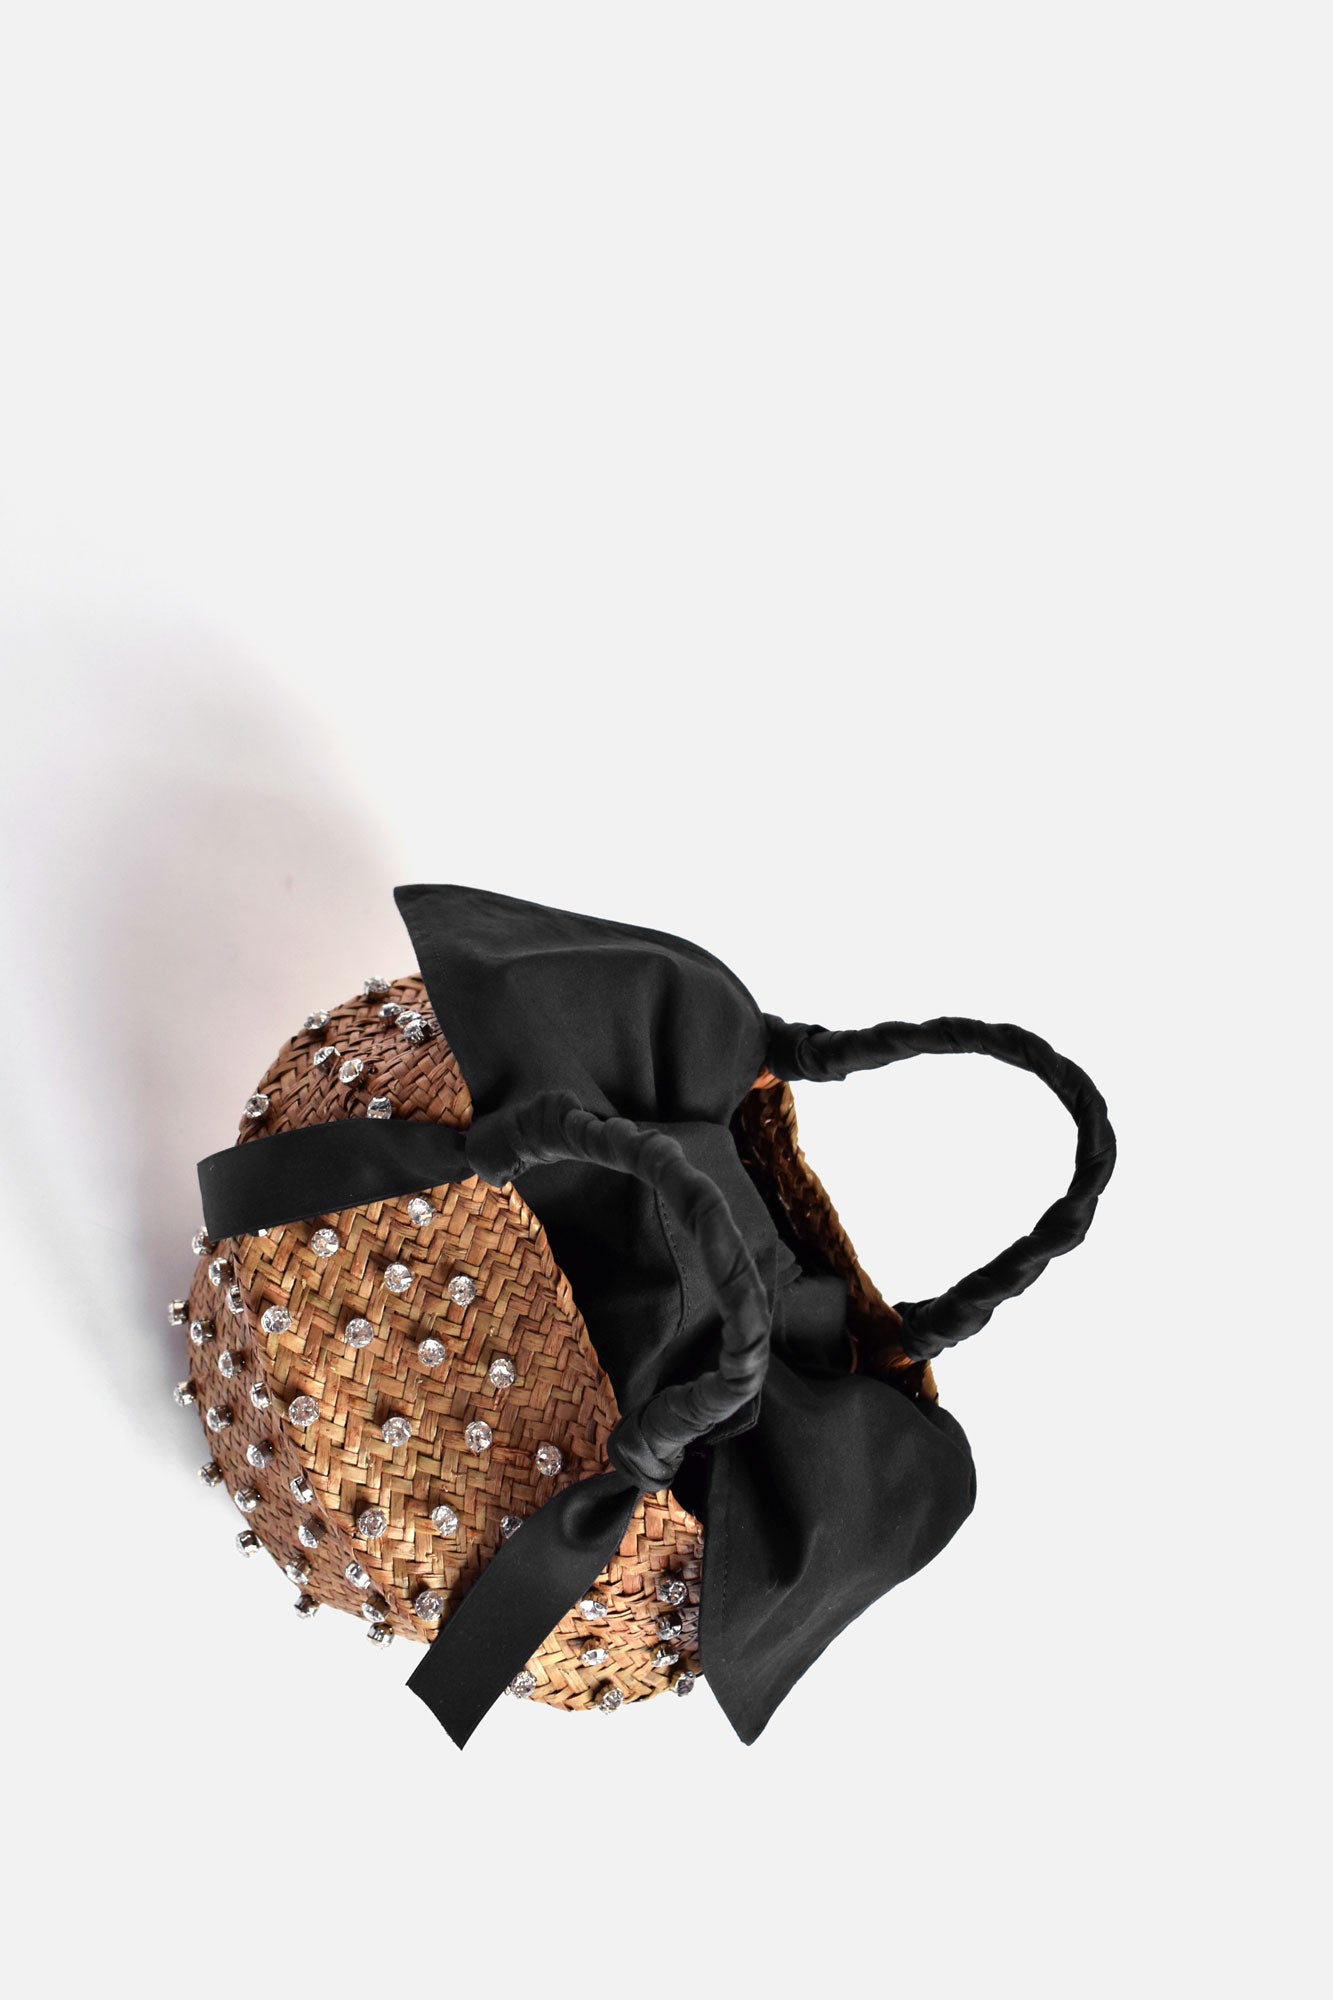 Mabelle Embellished Straw Bag